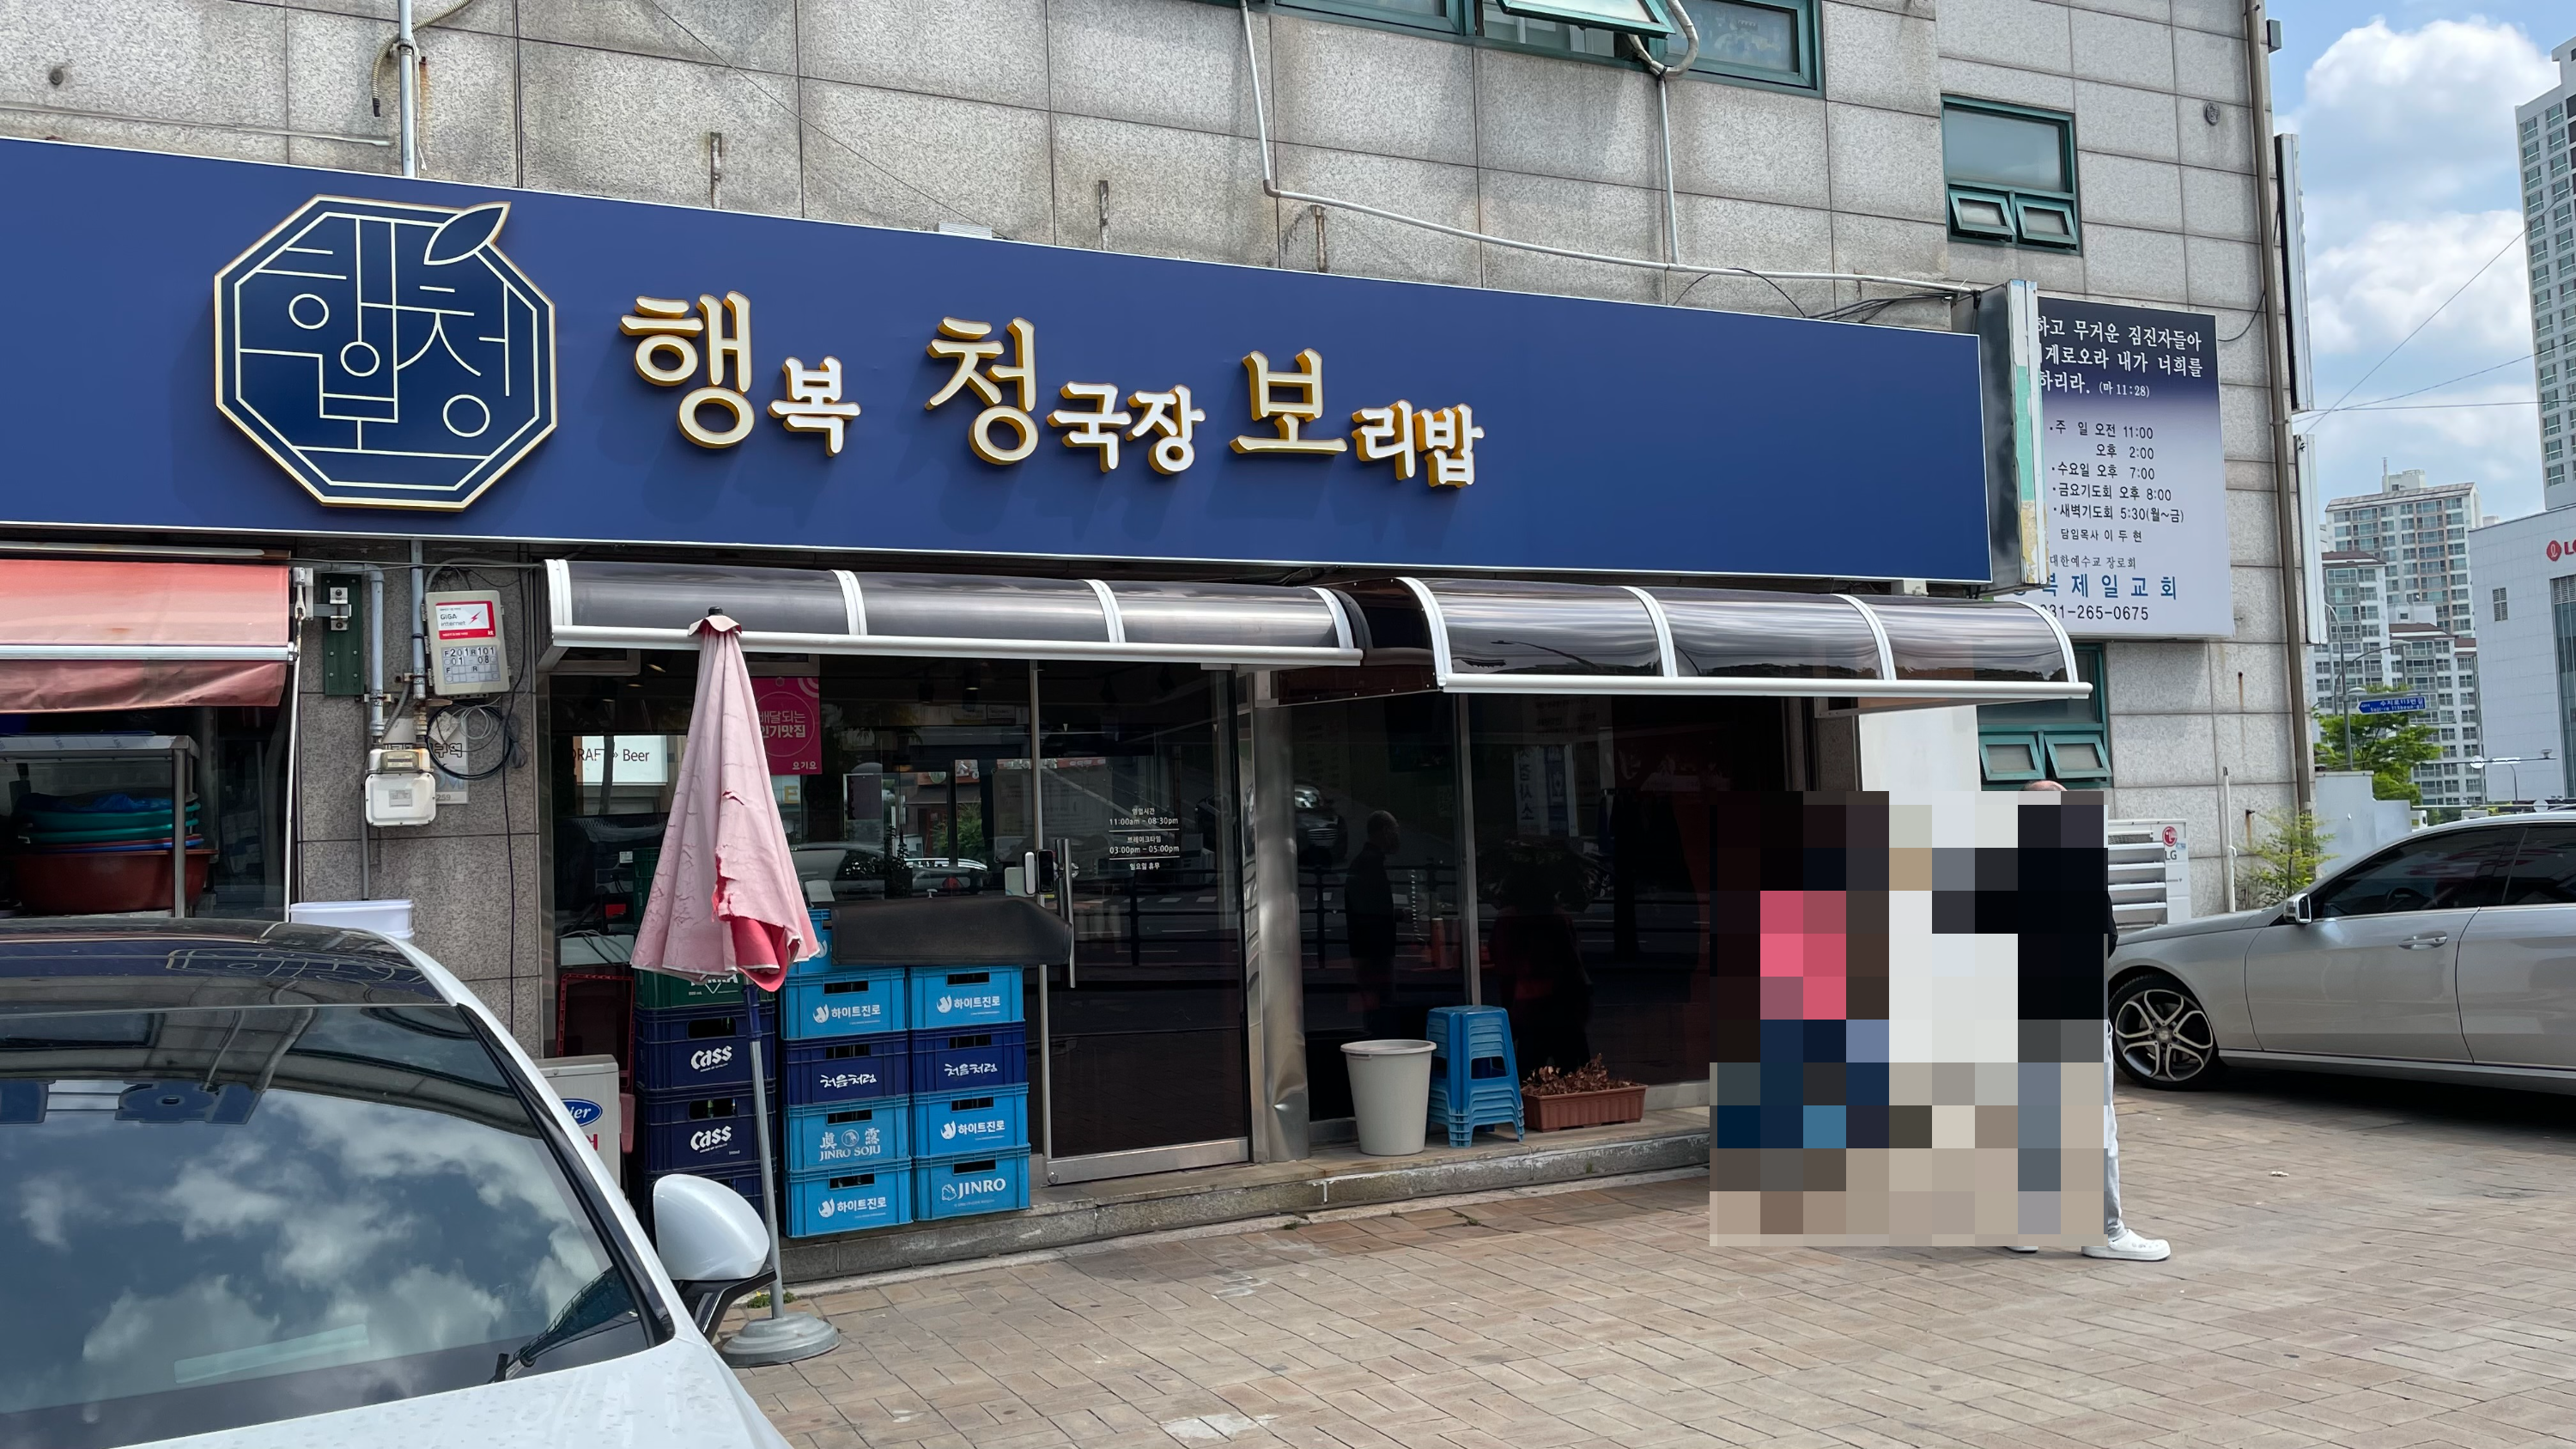 행복청국장보리밥 외관